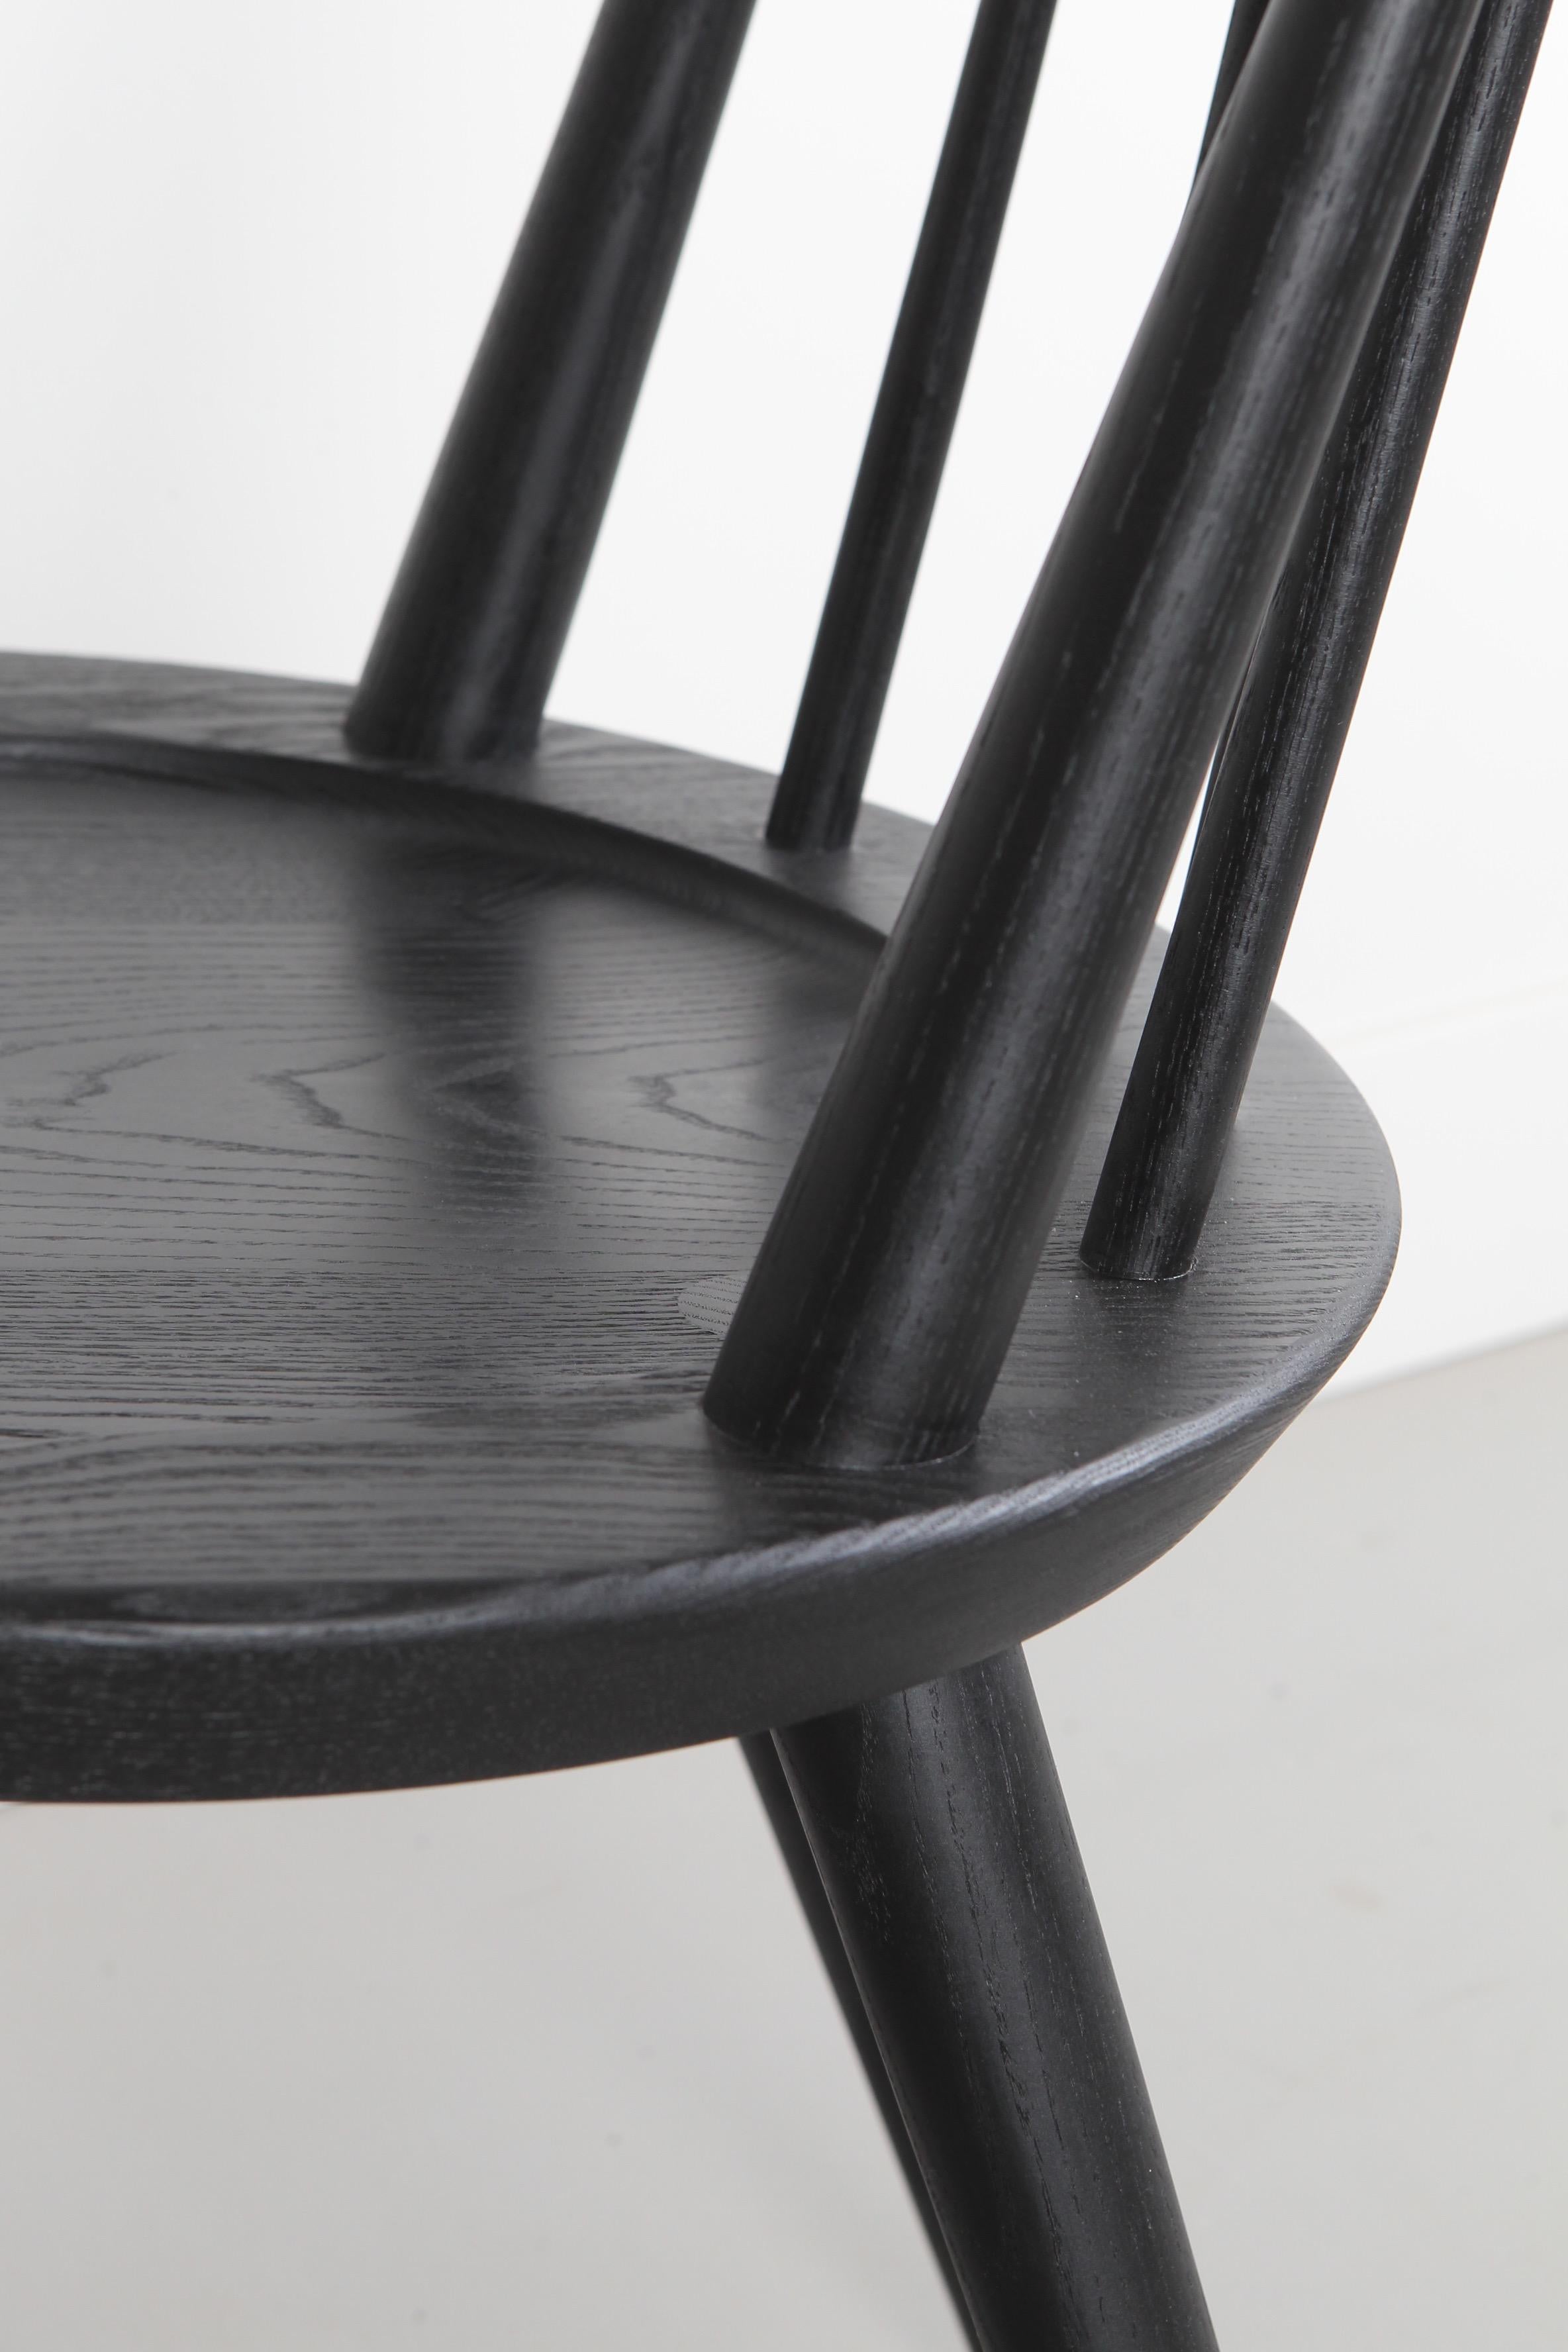 La chaise Vände est une version contemporaine de la chaise Windsor classique. Les fuseaux tournés à la main sont dotés d'un assemblage à tenon et mortaise pour plus de solidité et d'esthétique.

Le siège rond a été sculpté pour le confort. Le